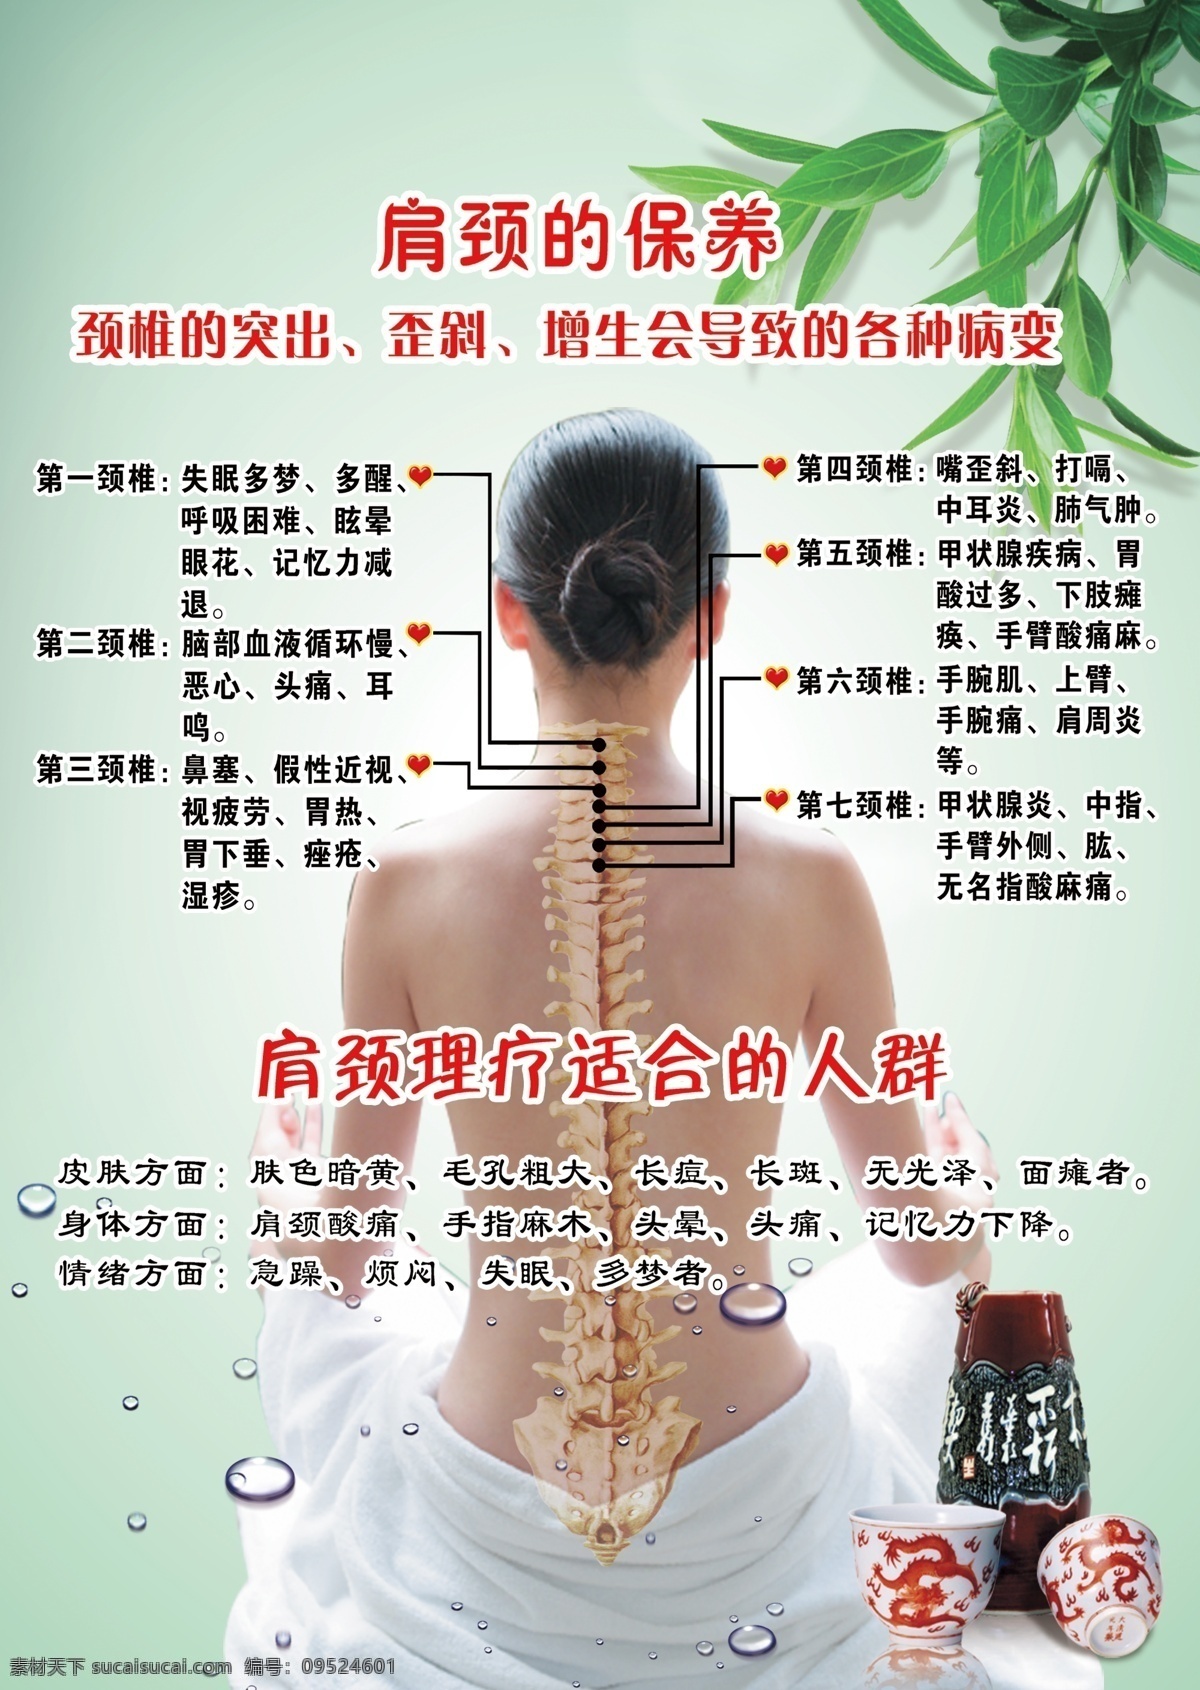 肩颈理疗海报 模板 女人 其他人物 人体 人体穴位图 养生 肩 颈 穴位 图 模板下载 保养 身体 法 体穴位图 白色